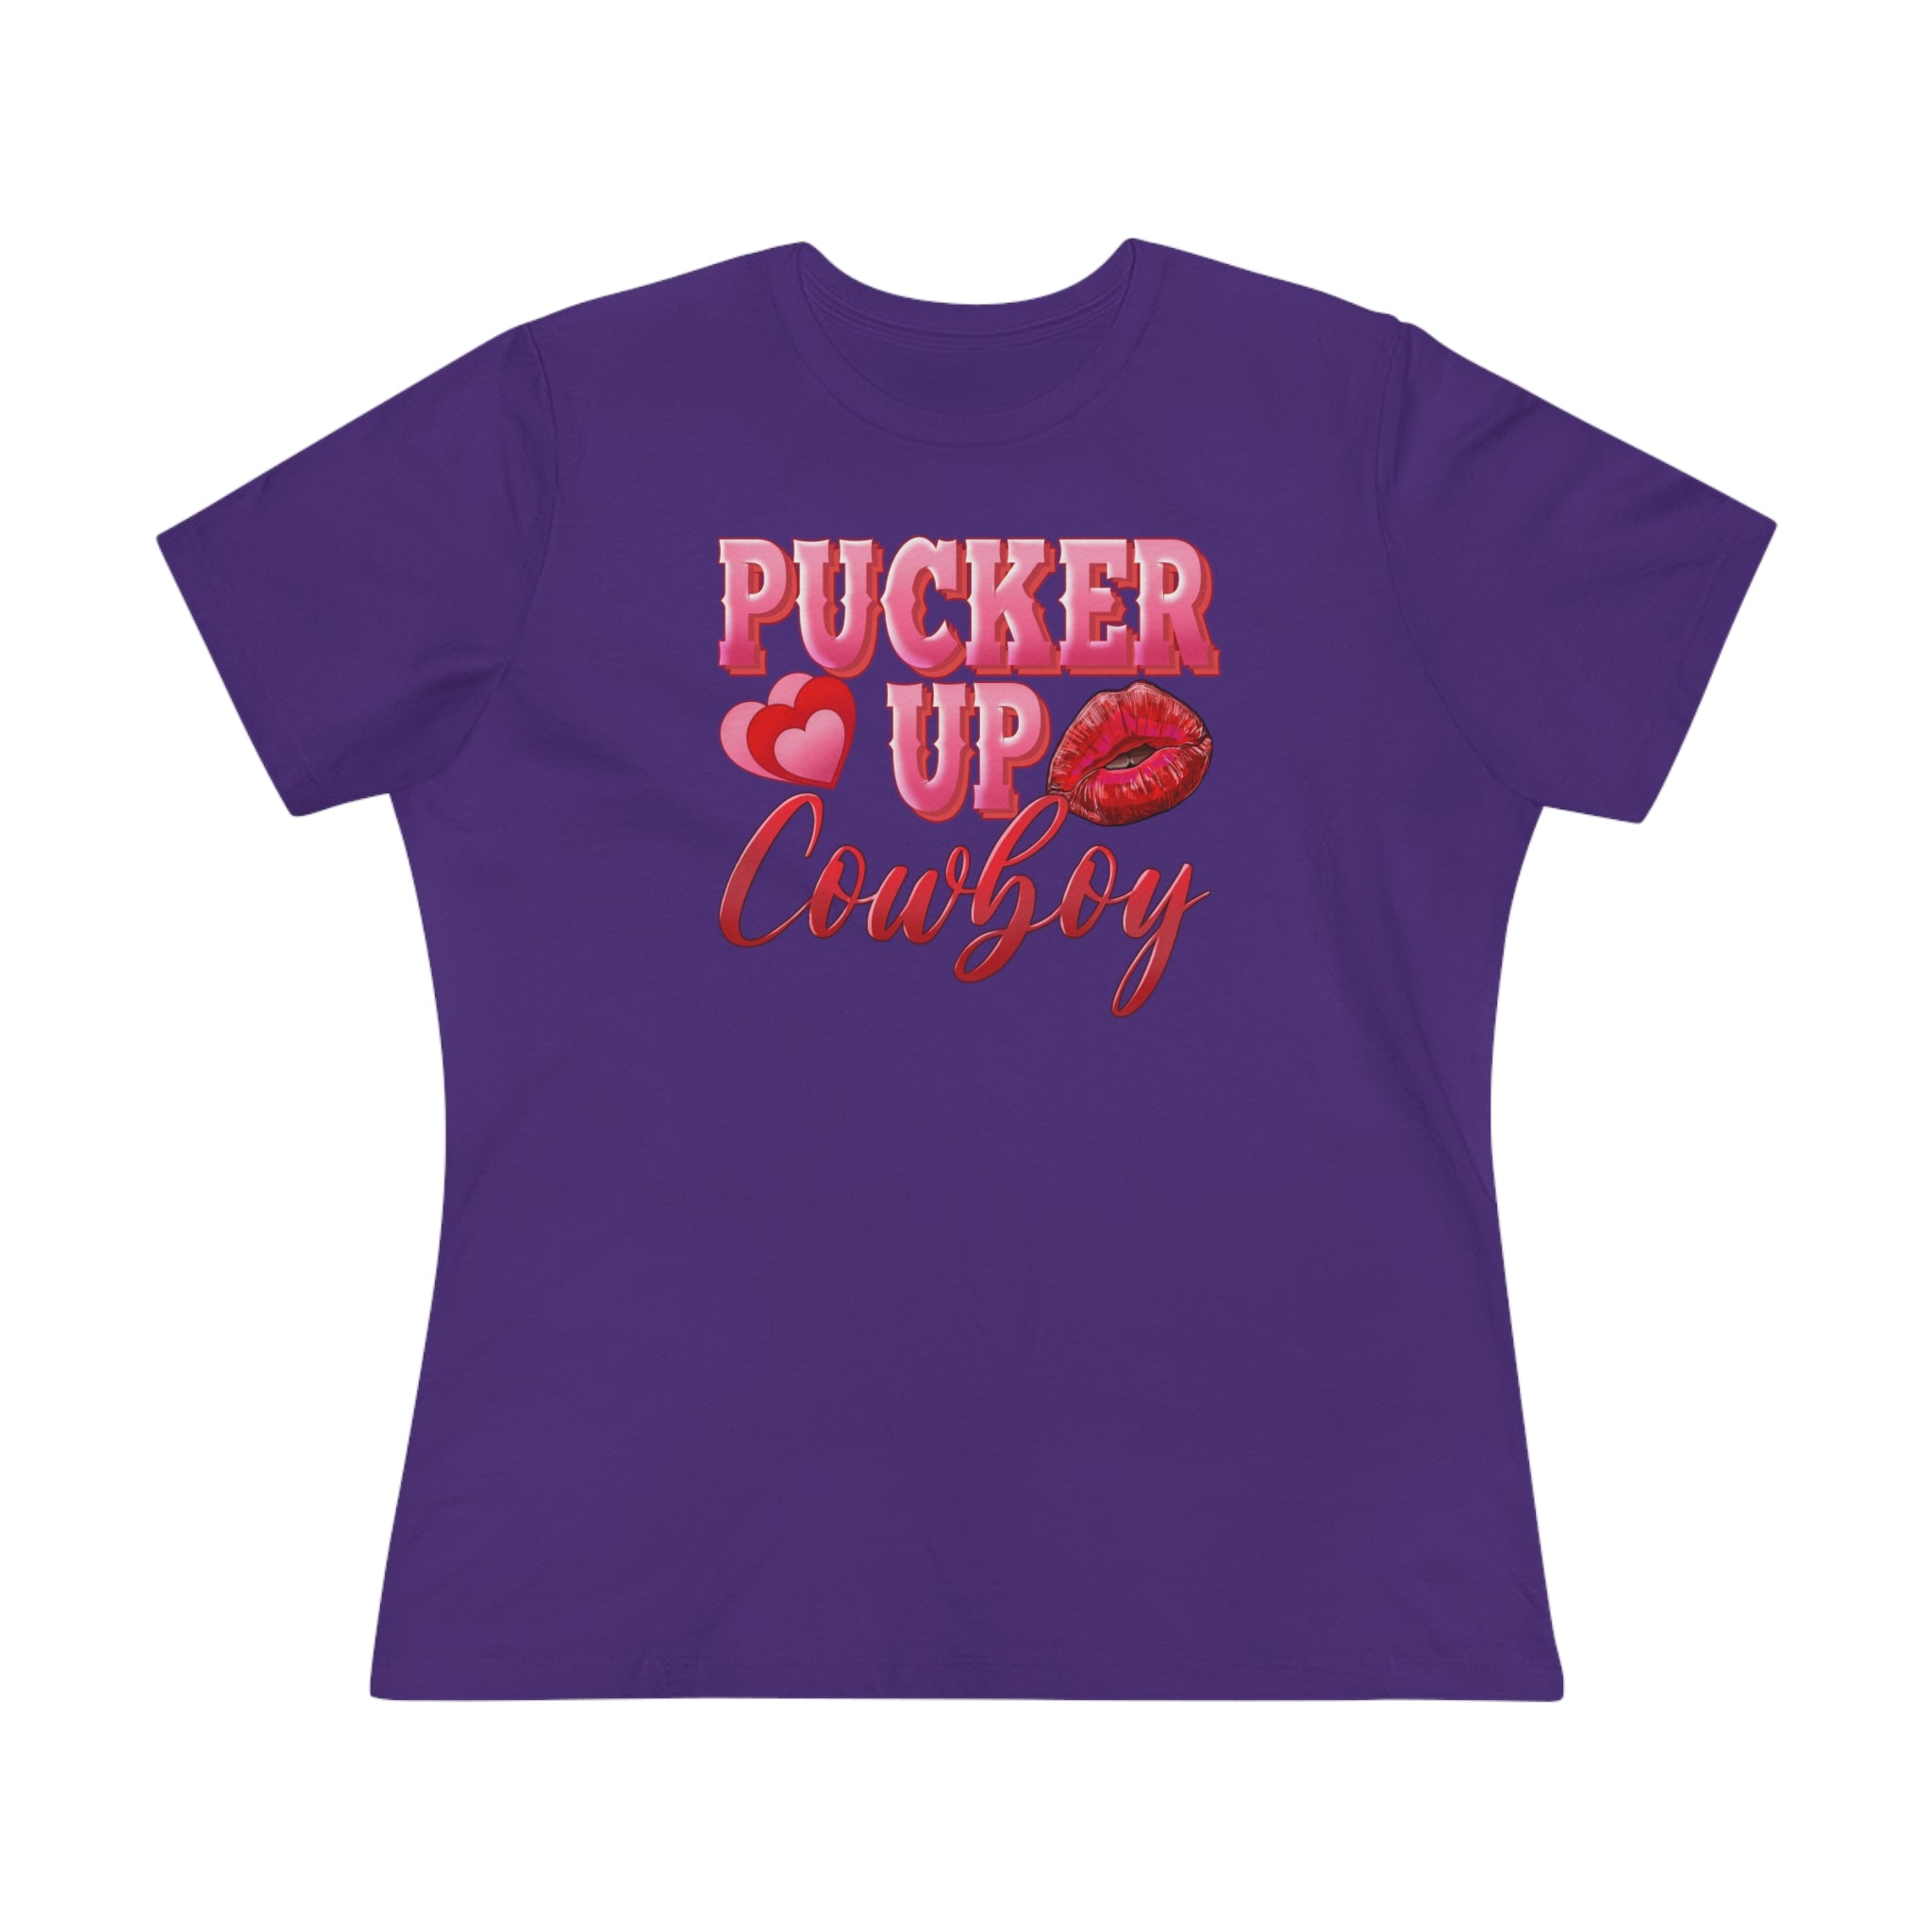 Pucker Up Cowboy Women's Premium Tee